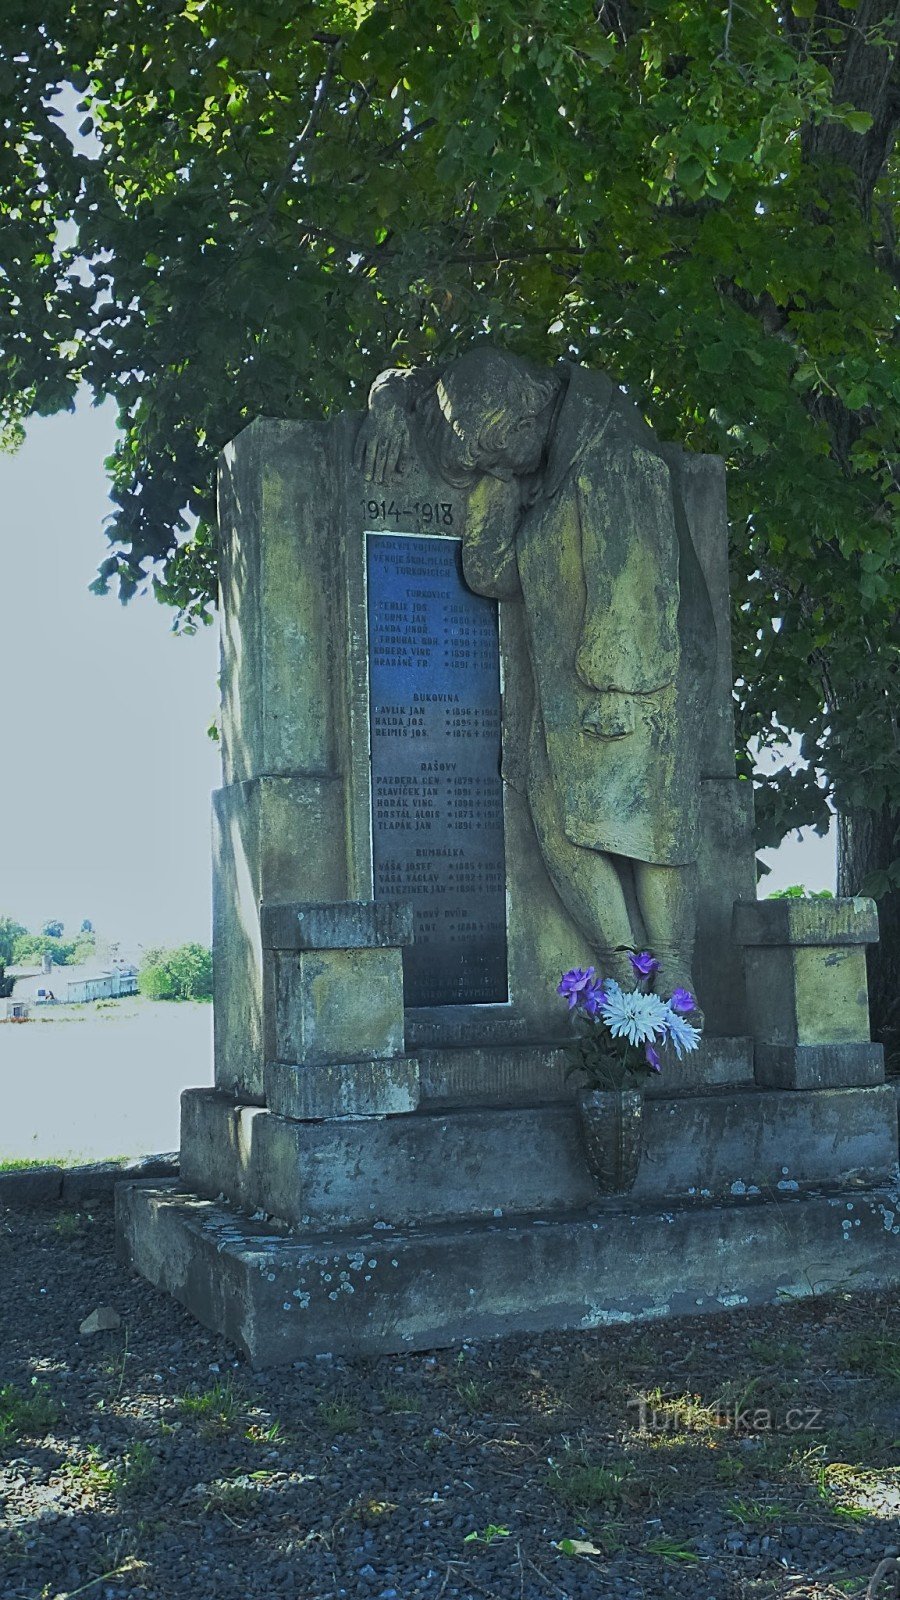 19 tên liệt sĩ từ các làng xung quanh được khắc trên đài tưởng niệm